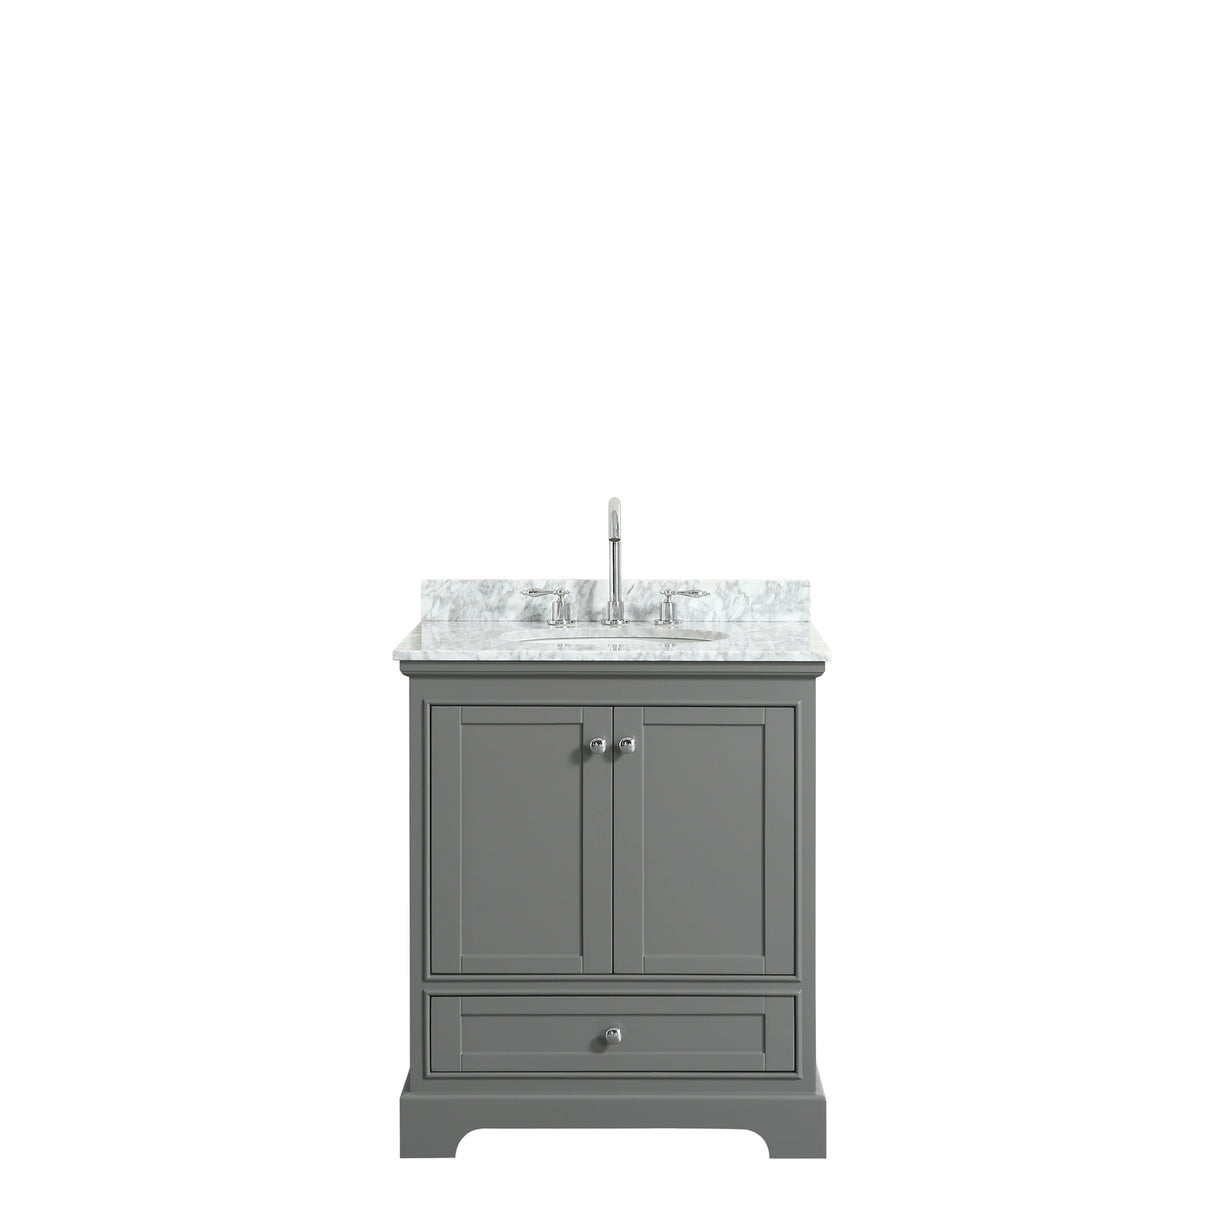 Deborah 30 Inch Single Bathroom Vanity in Dark Gray White Carrara Marble Countertop Undermount Oval Sink and No Mirror